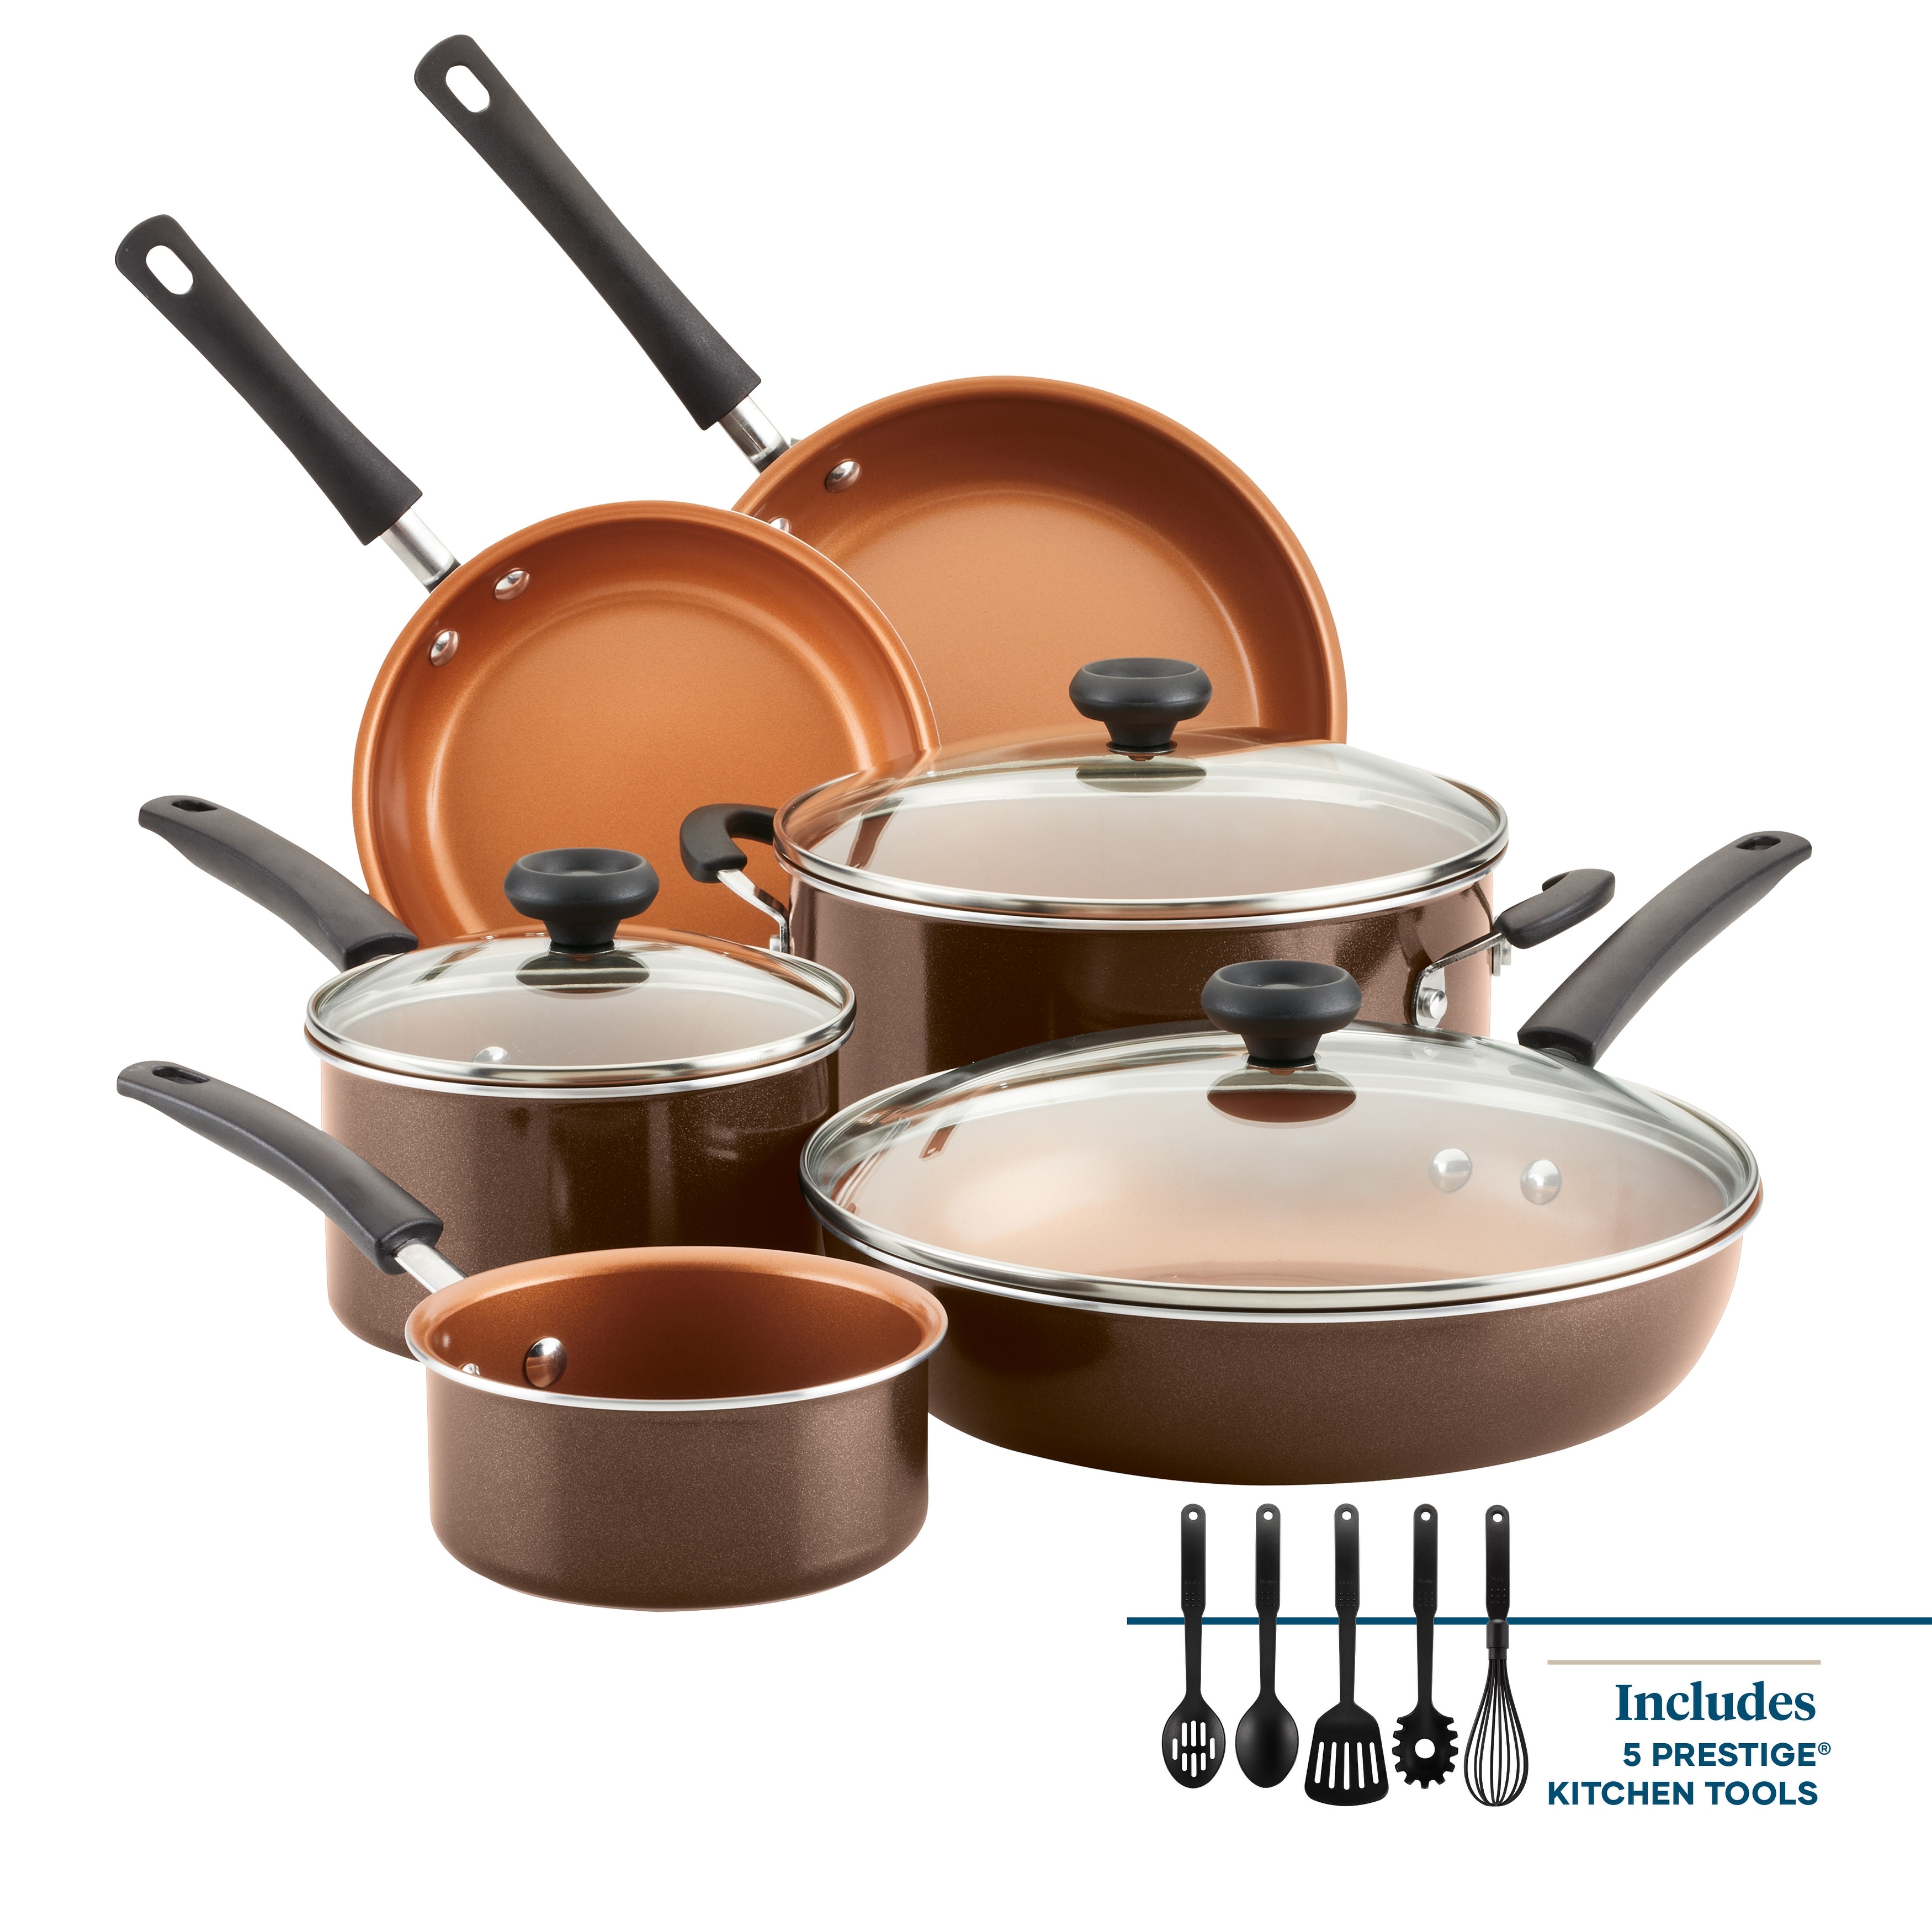 Farberware Easy Clean Aluminum Nonstick Cookware Pots and Pans  Set,11-Piece,Aqua